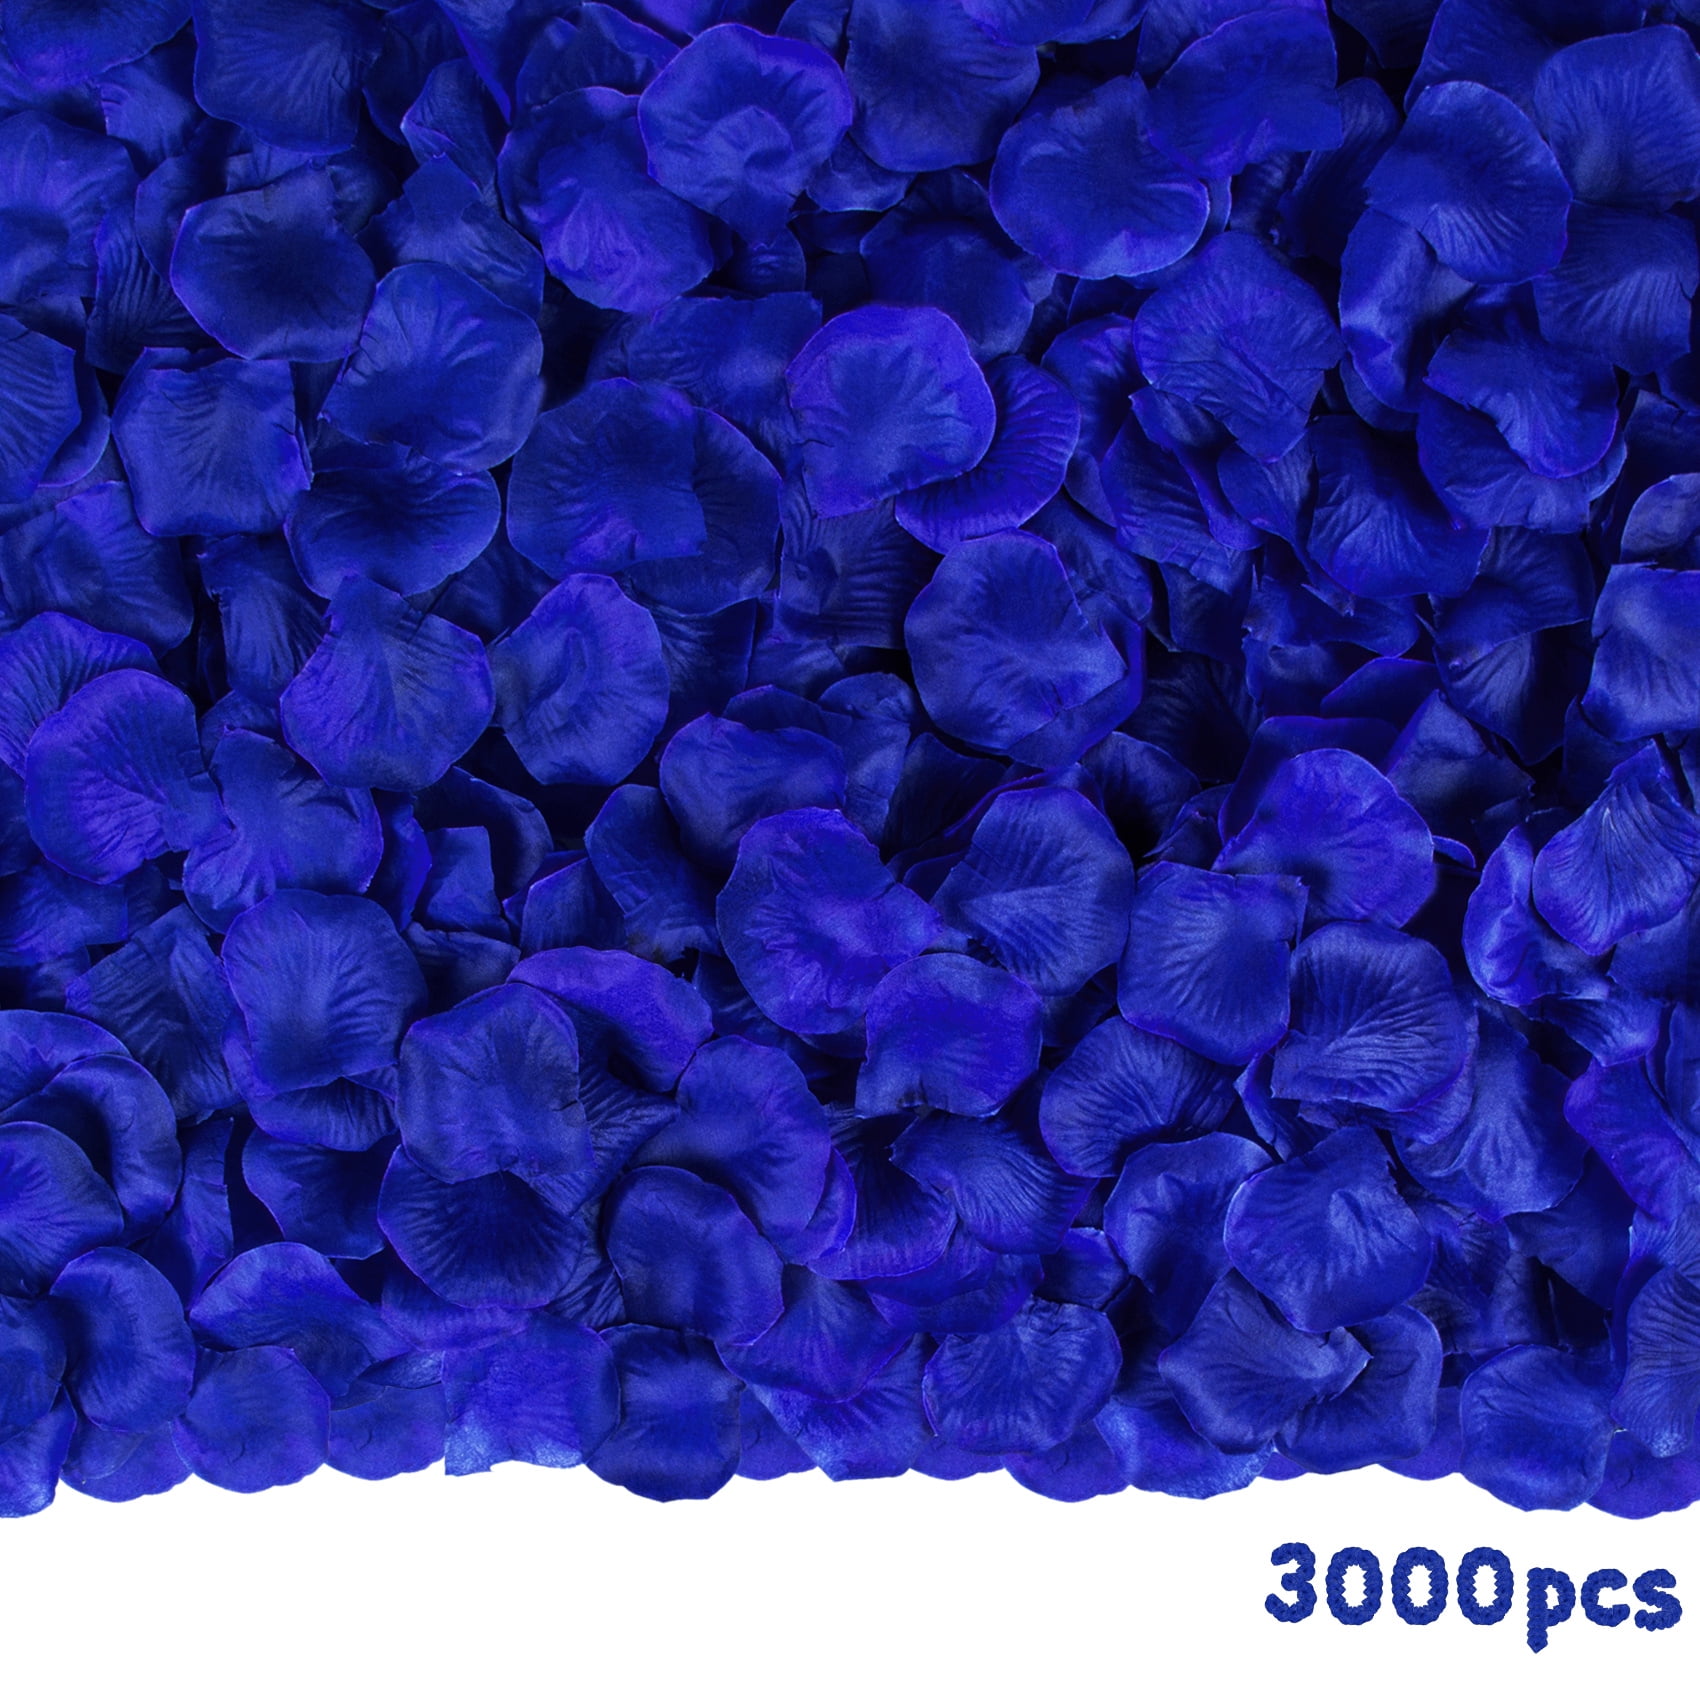  500-3000 Pieces Rose Petals Artificial Flower Petals